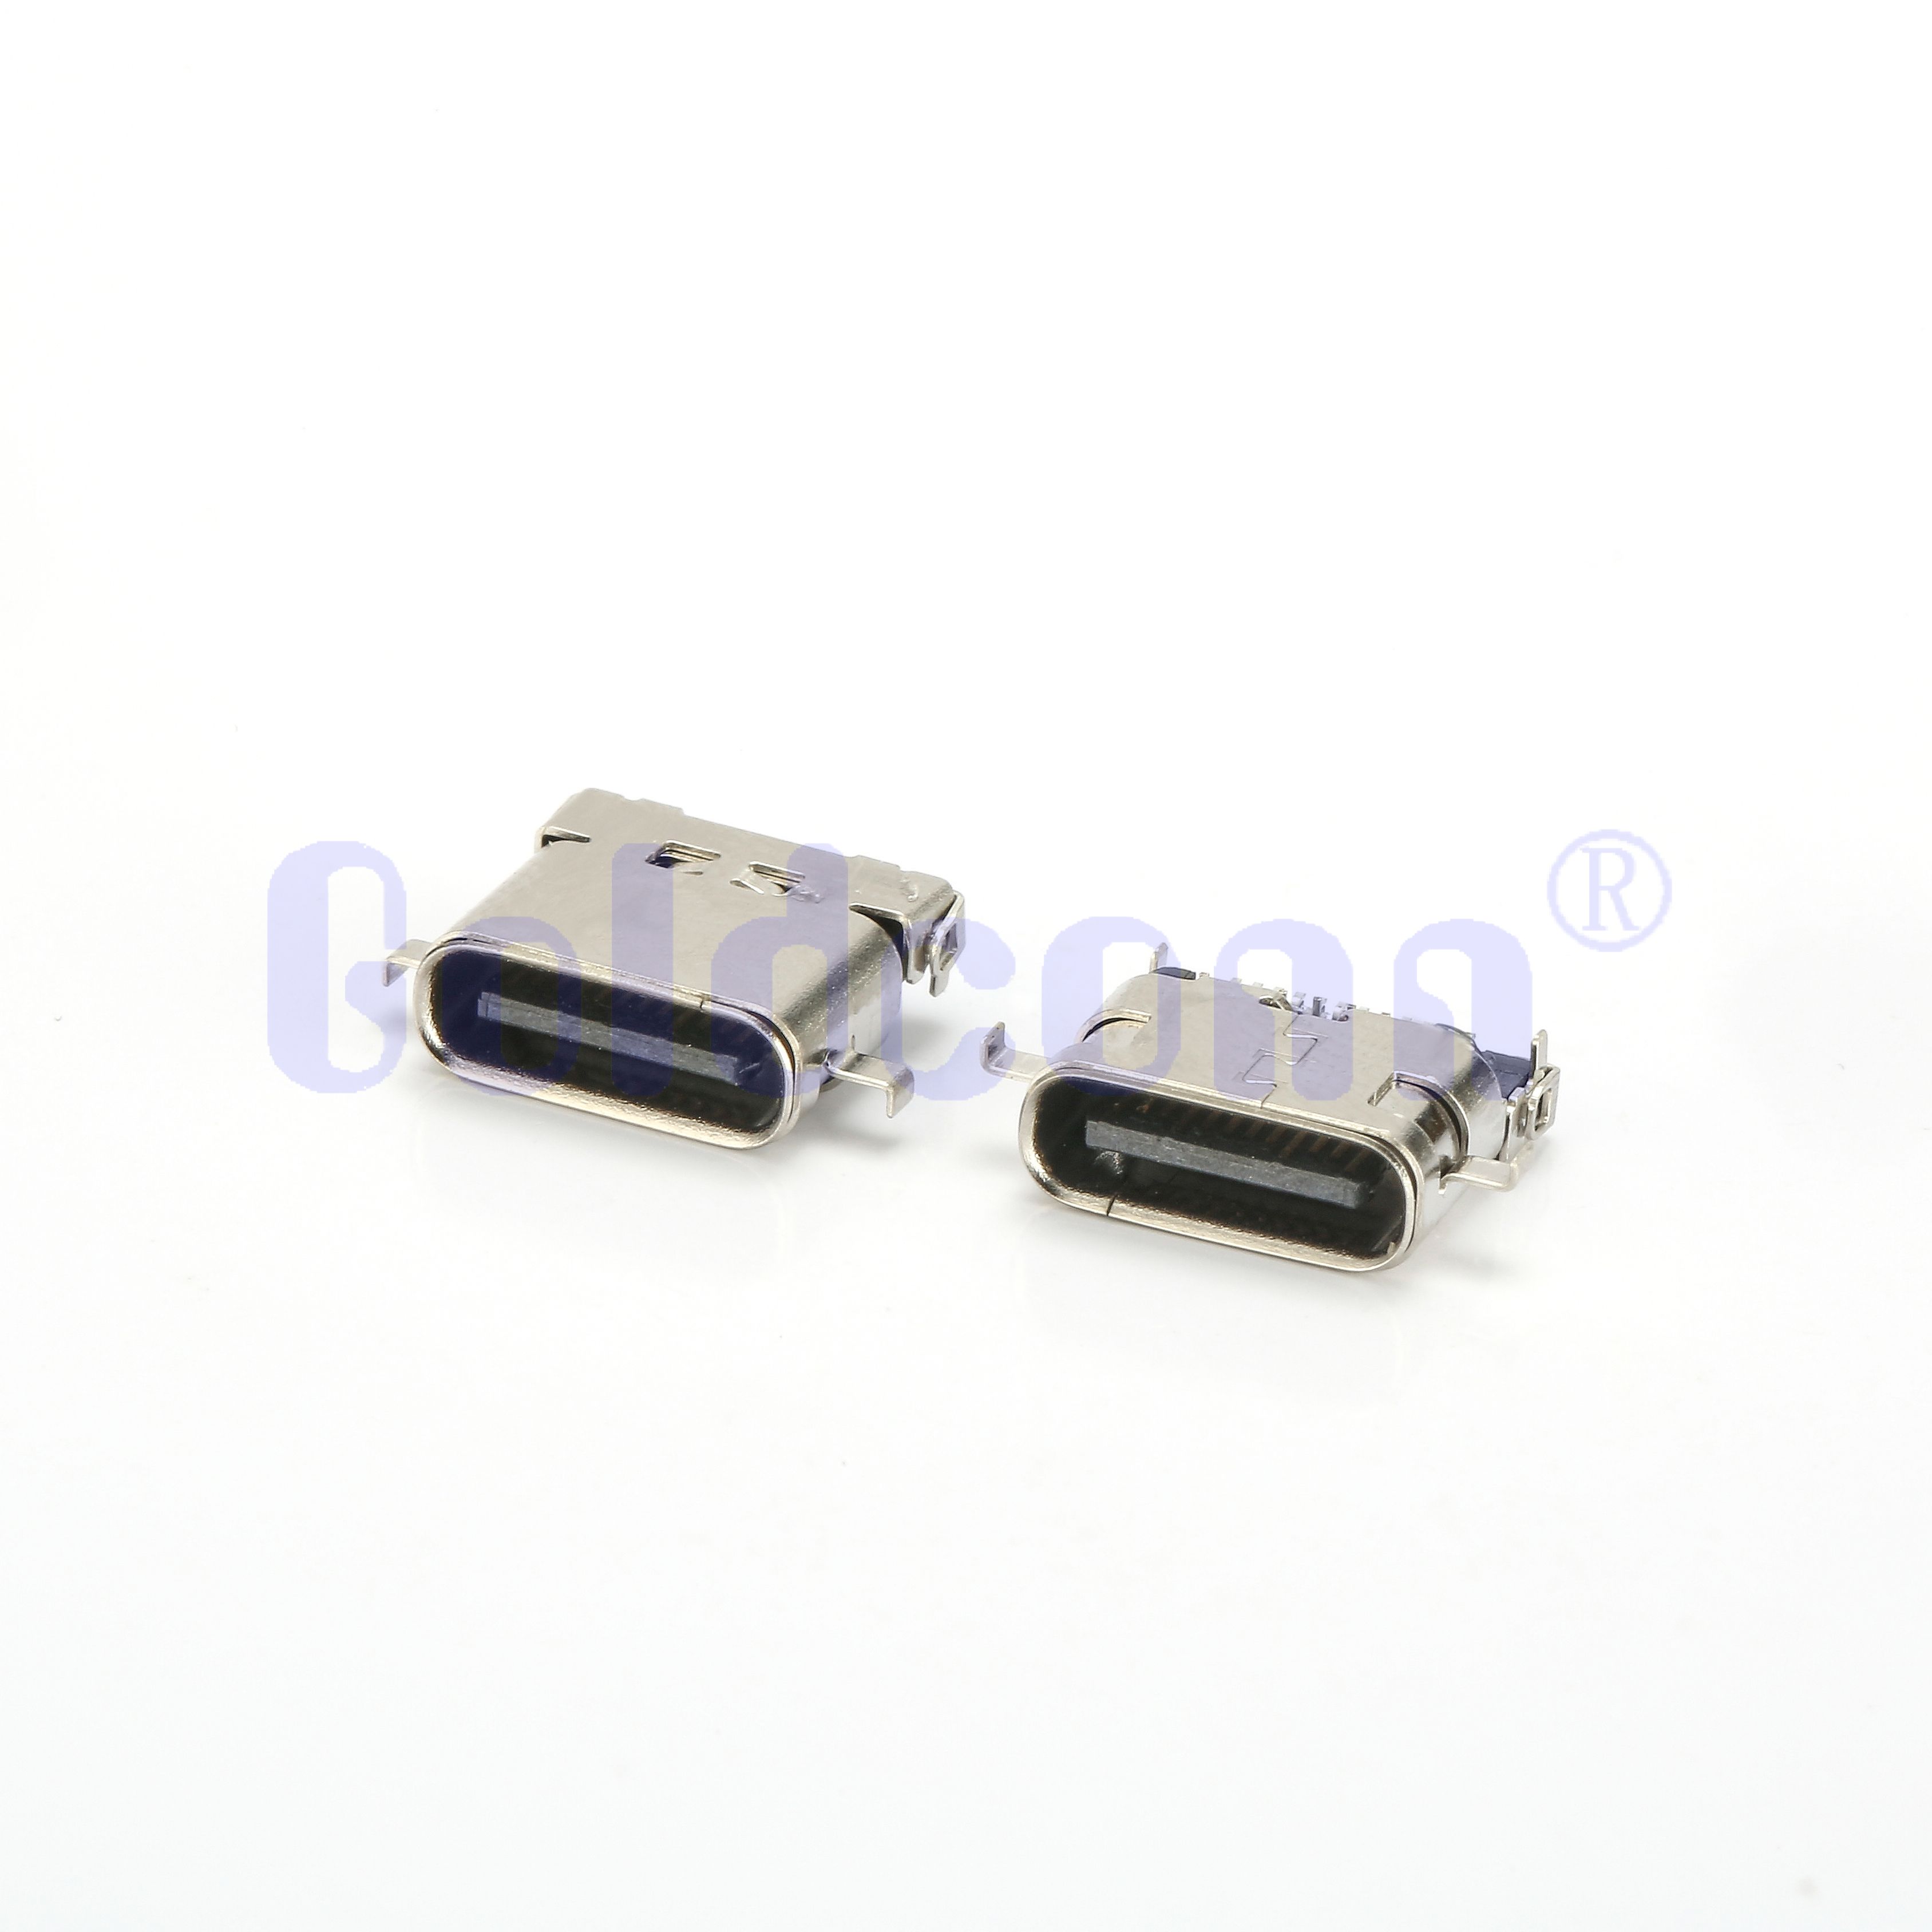 CF051-24LB02R-C3 Tipo C TID USB USB 24 pin Conector femenino Doble caparazón